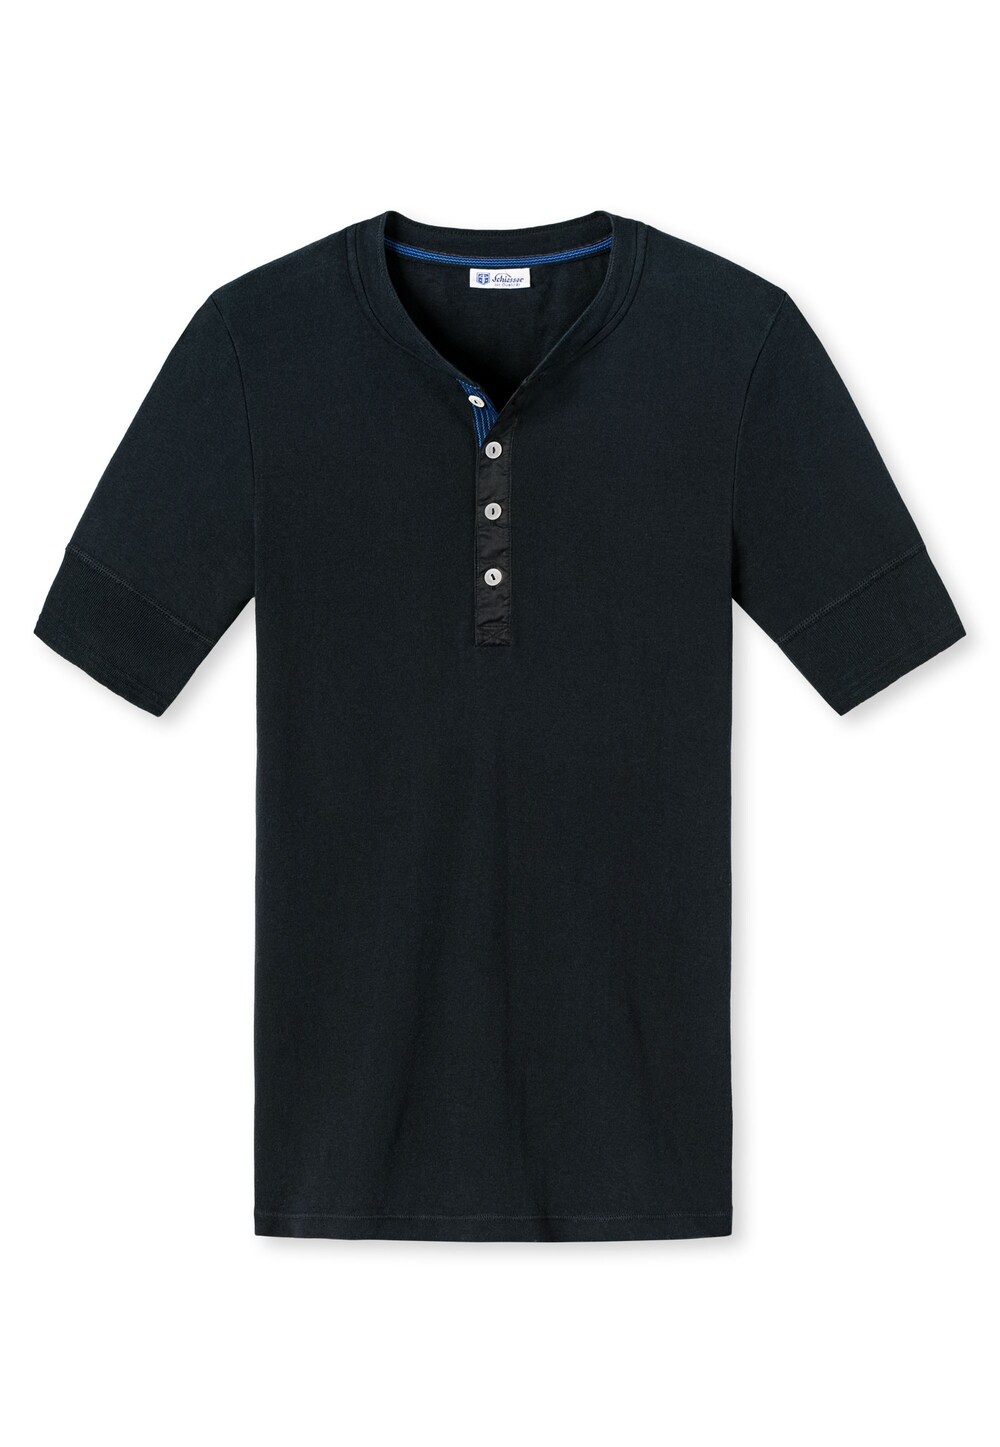 Футболка SCHIESSER REVIVAL, черный футболка schiesser revival синий темно синий